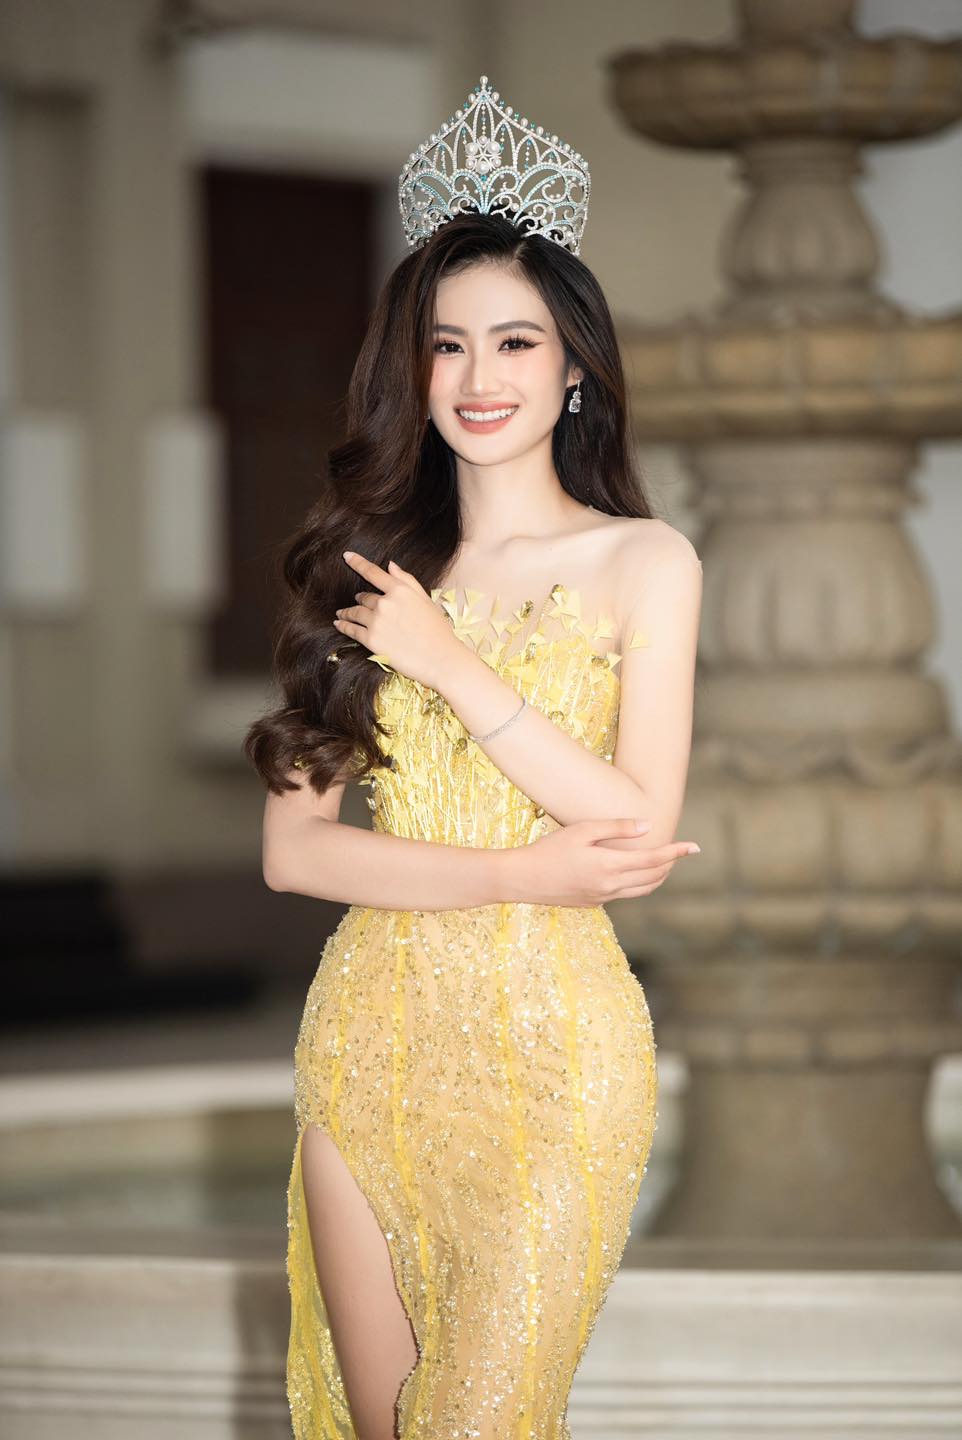 Hơn 600.000 người tham gia nhóm phản đối Hoa hậu Ý Nhi, nhiều hơn cả trang chính thức của Miss World Vietnam - ảnh 3